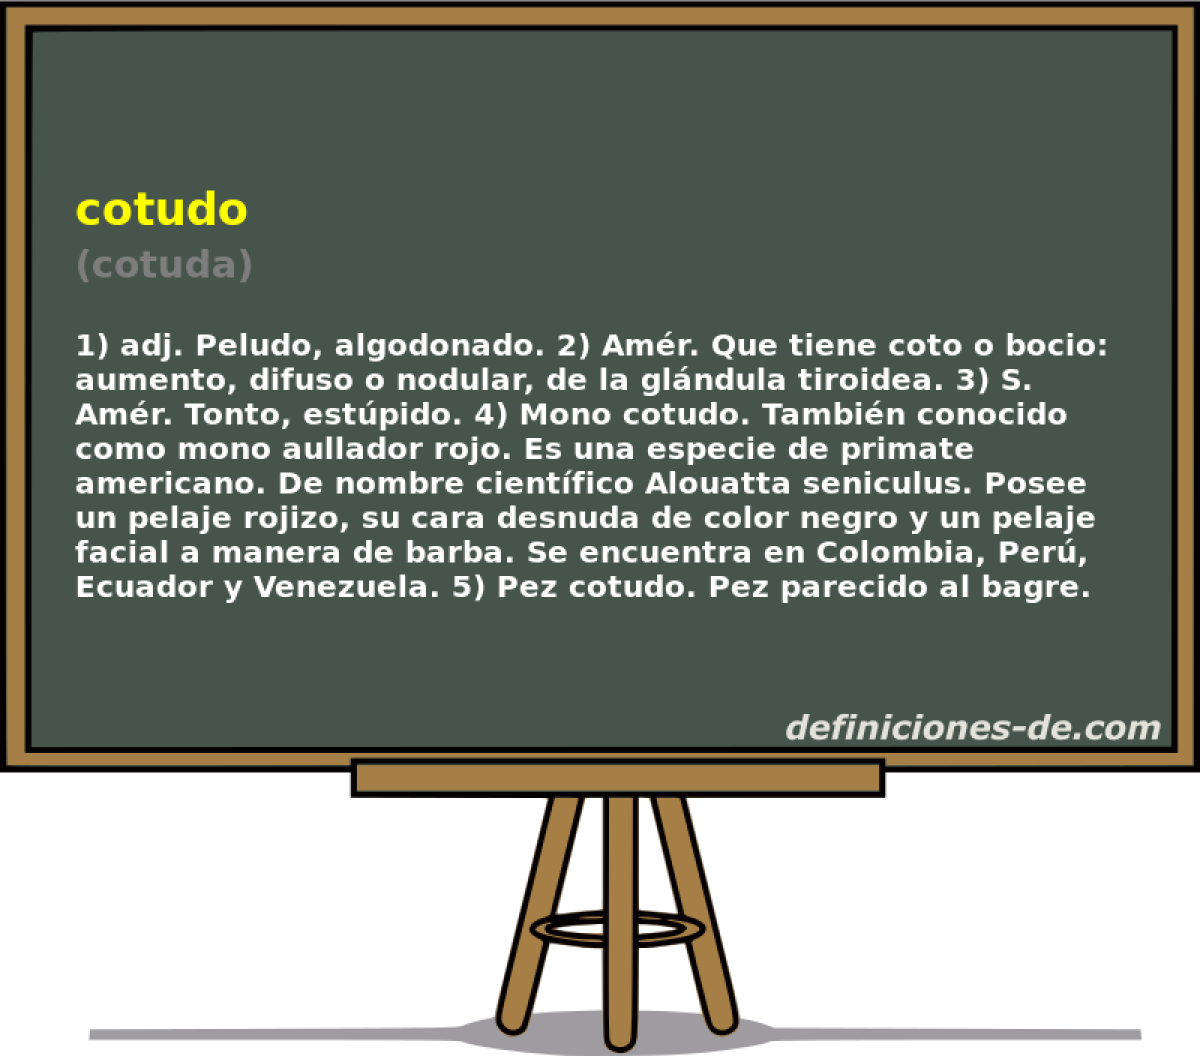 cotudo (cotuda)